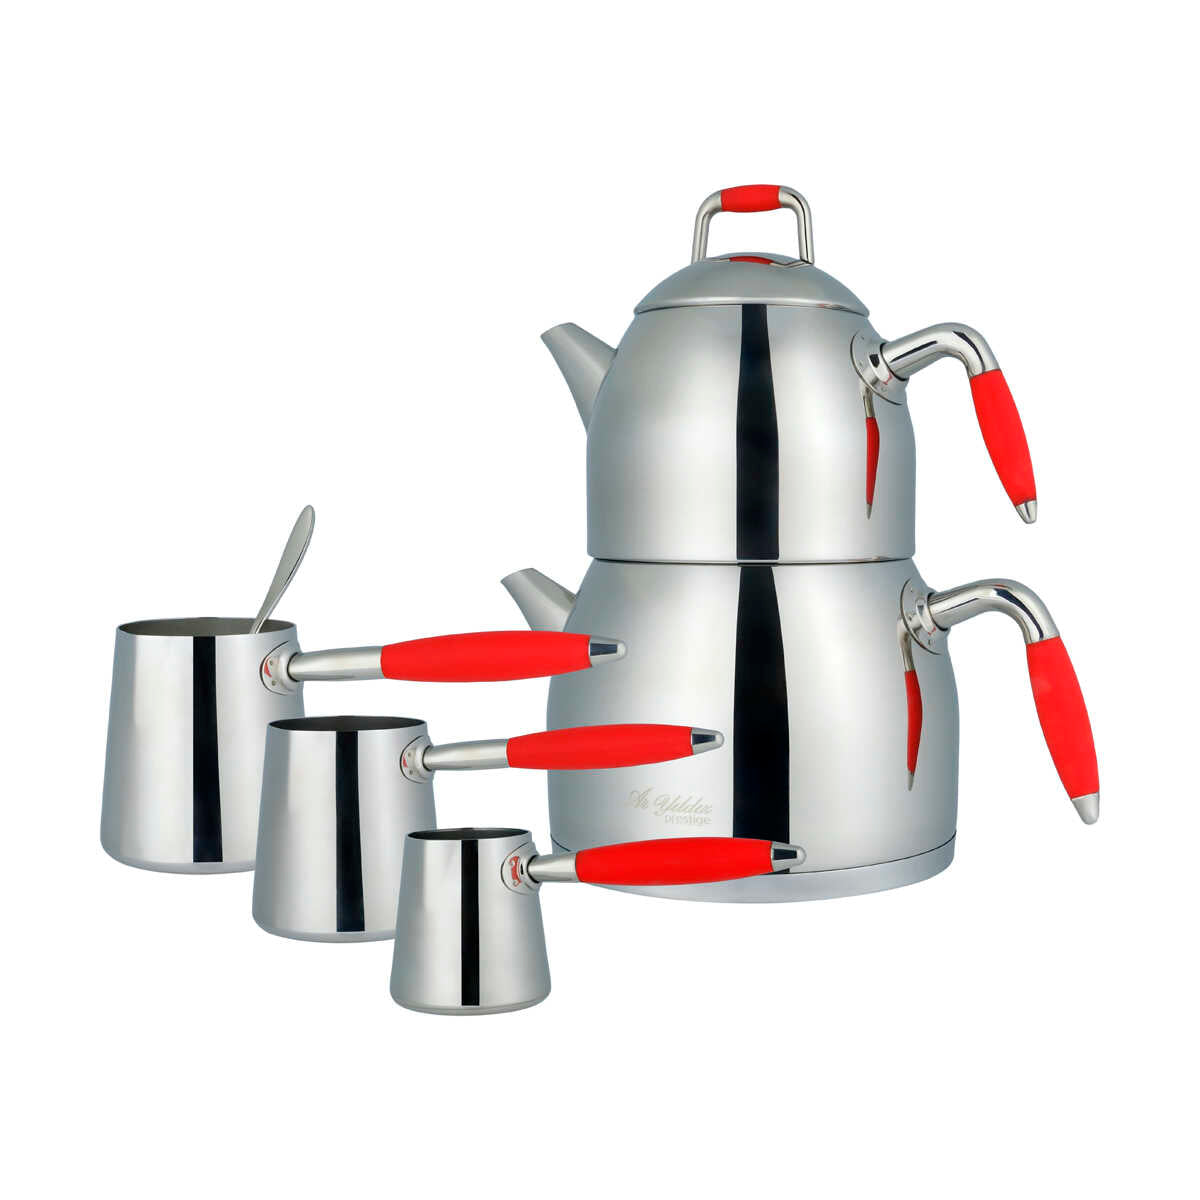 Aryıldız Family Teapot and Coffee Pot Set Red